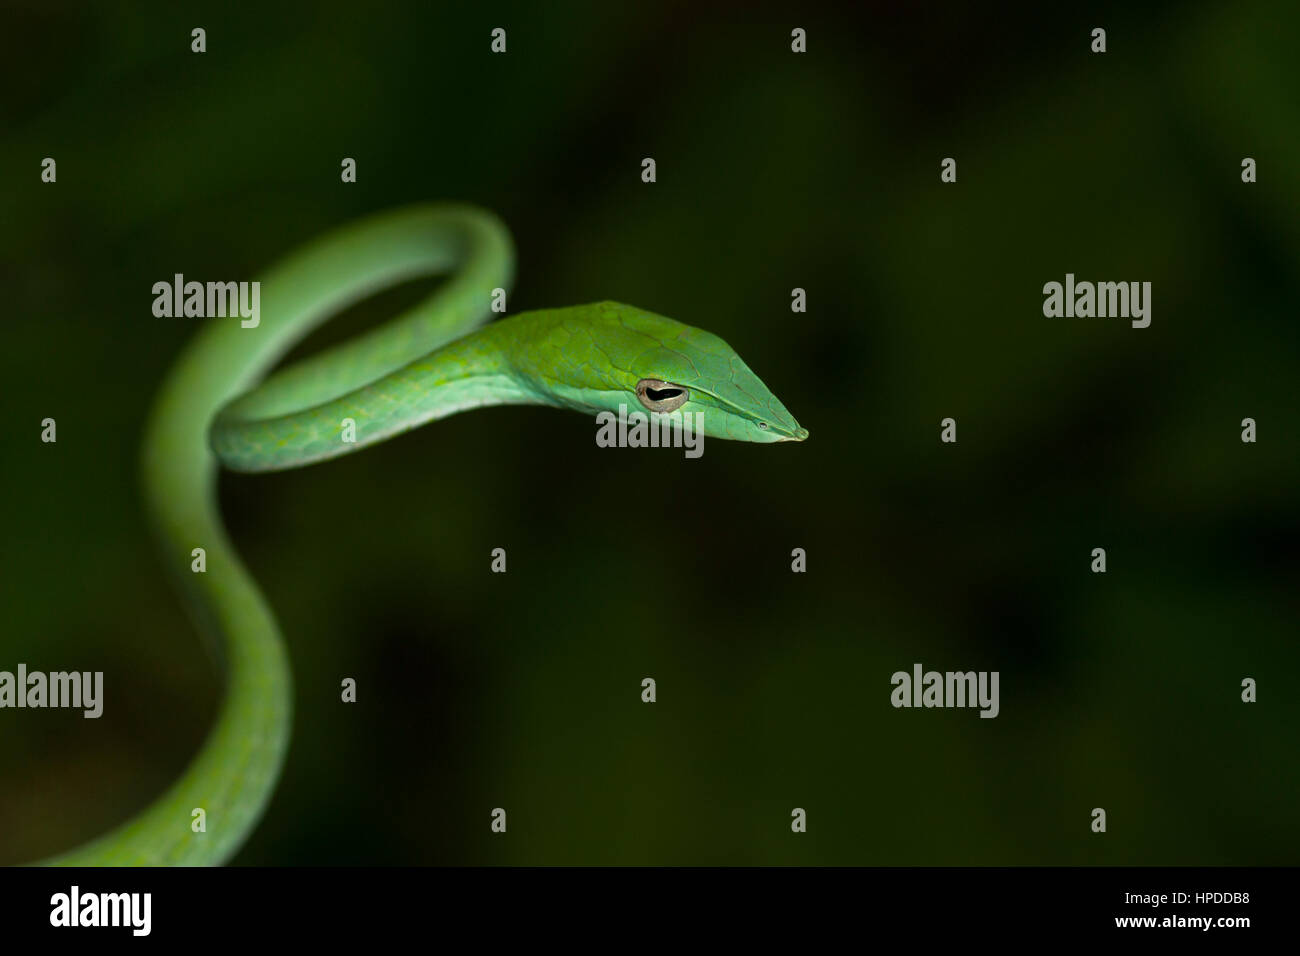 Green vine snake upper body in air Stock Photo